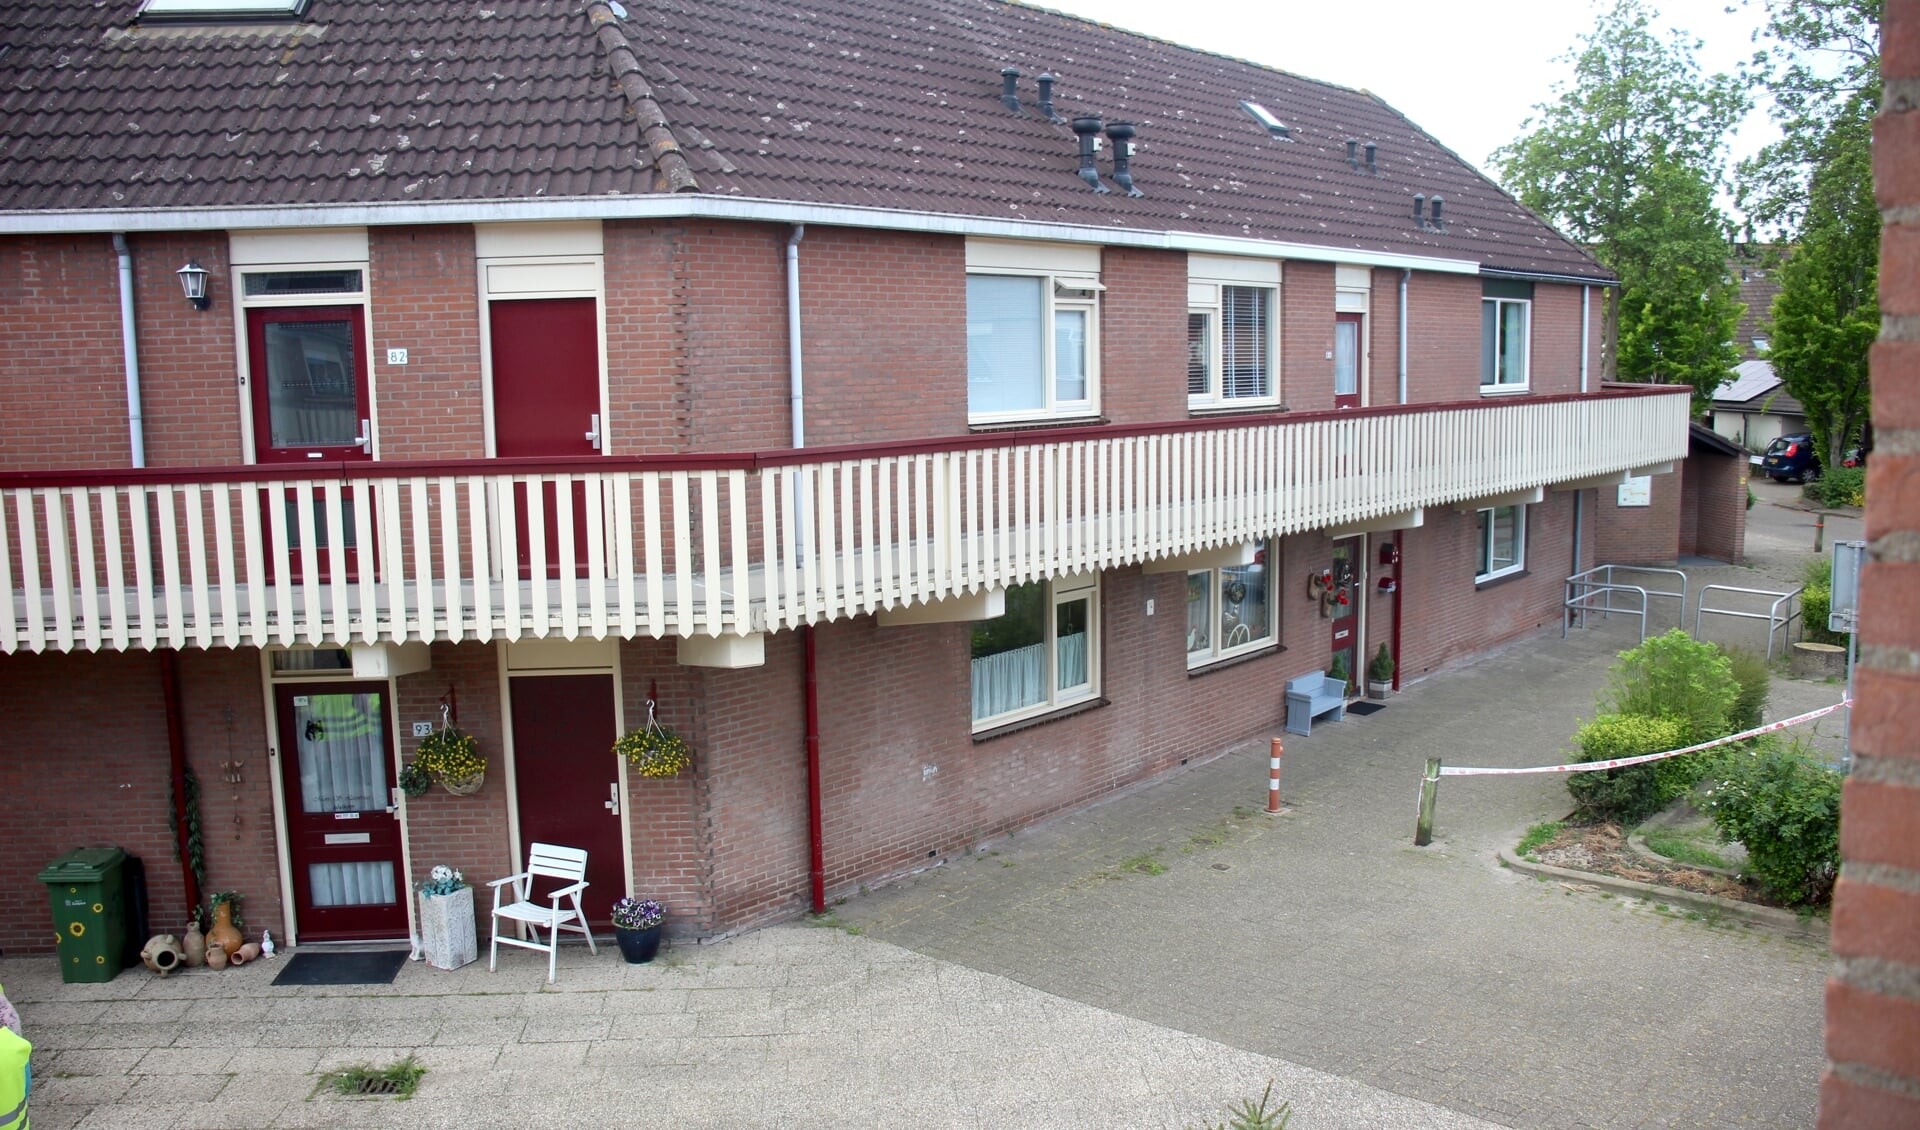 Woningen aan de Valkendaal in Nieuwerkerk.